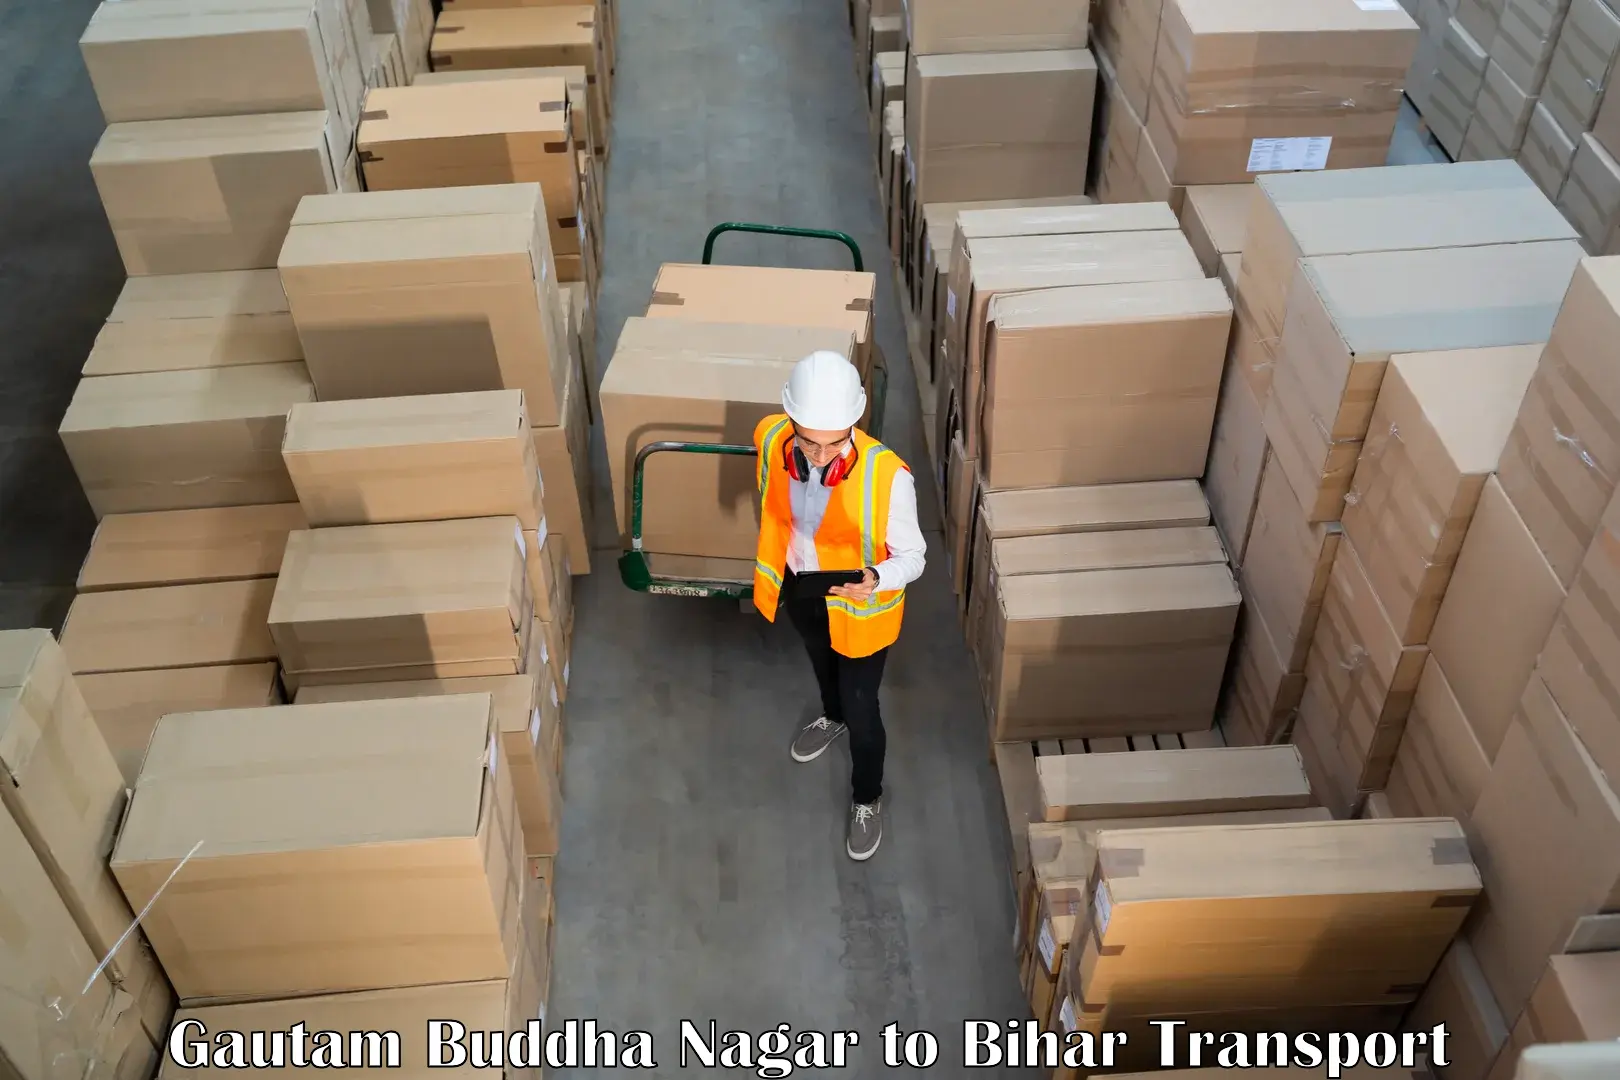 Container transportation services Gautam Buddha Nagar to Sheikhpura